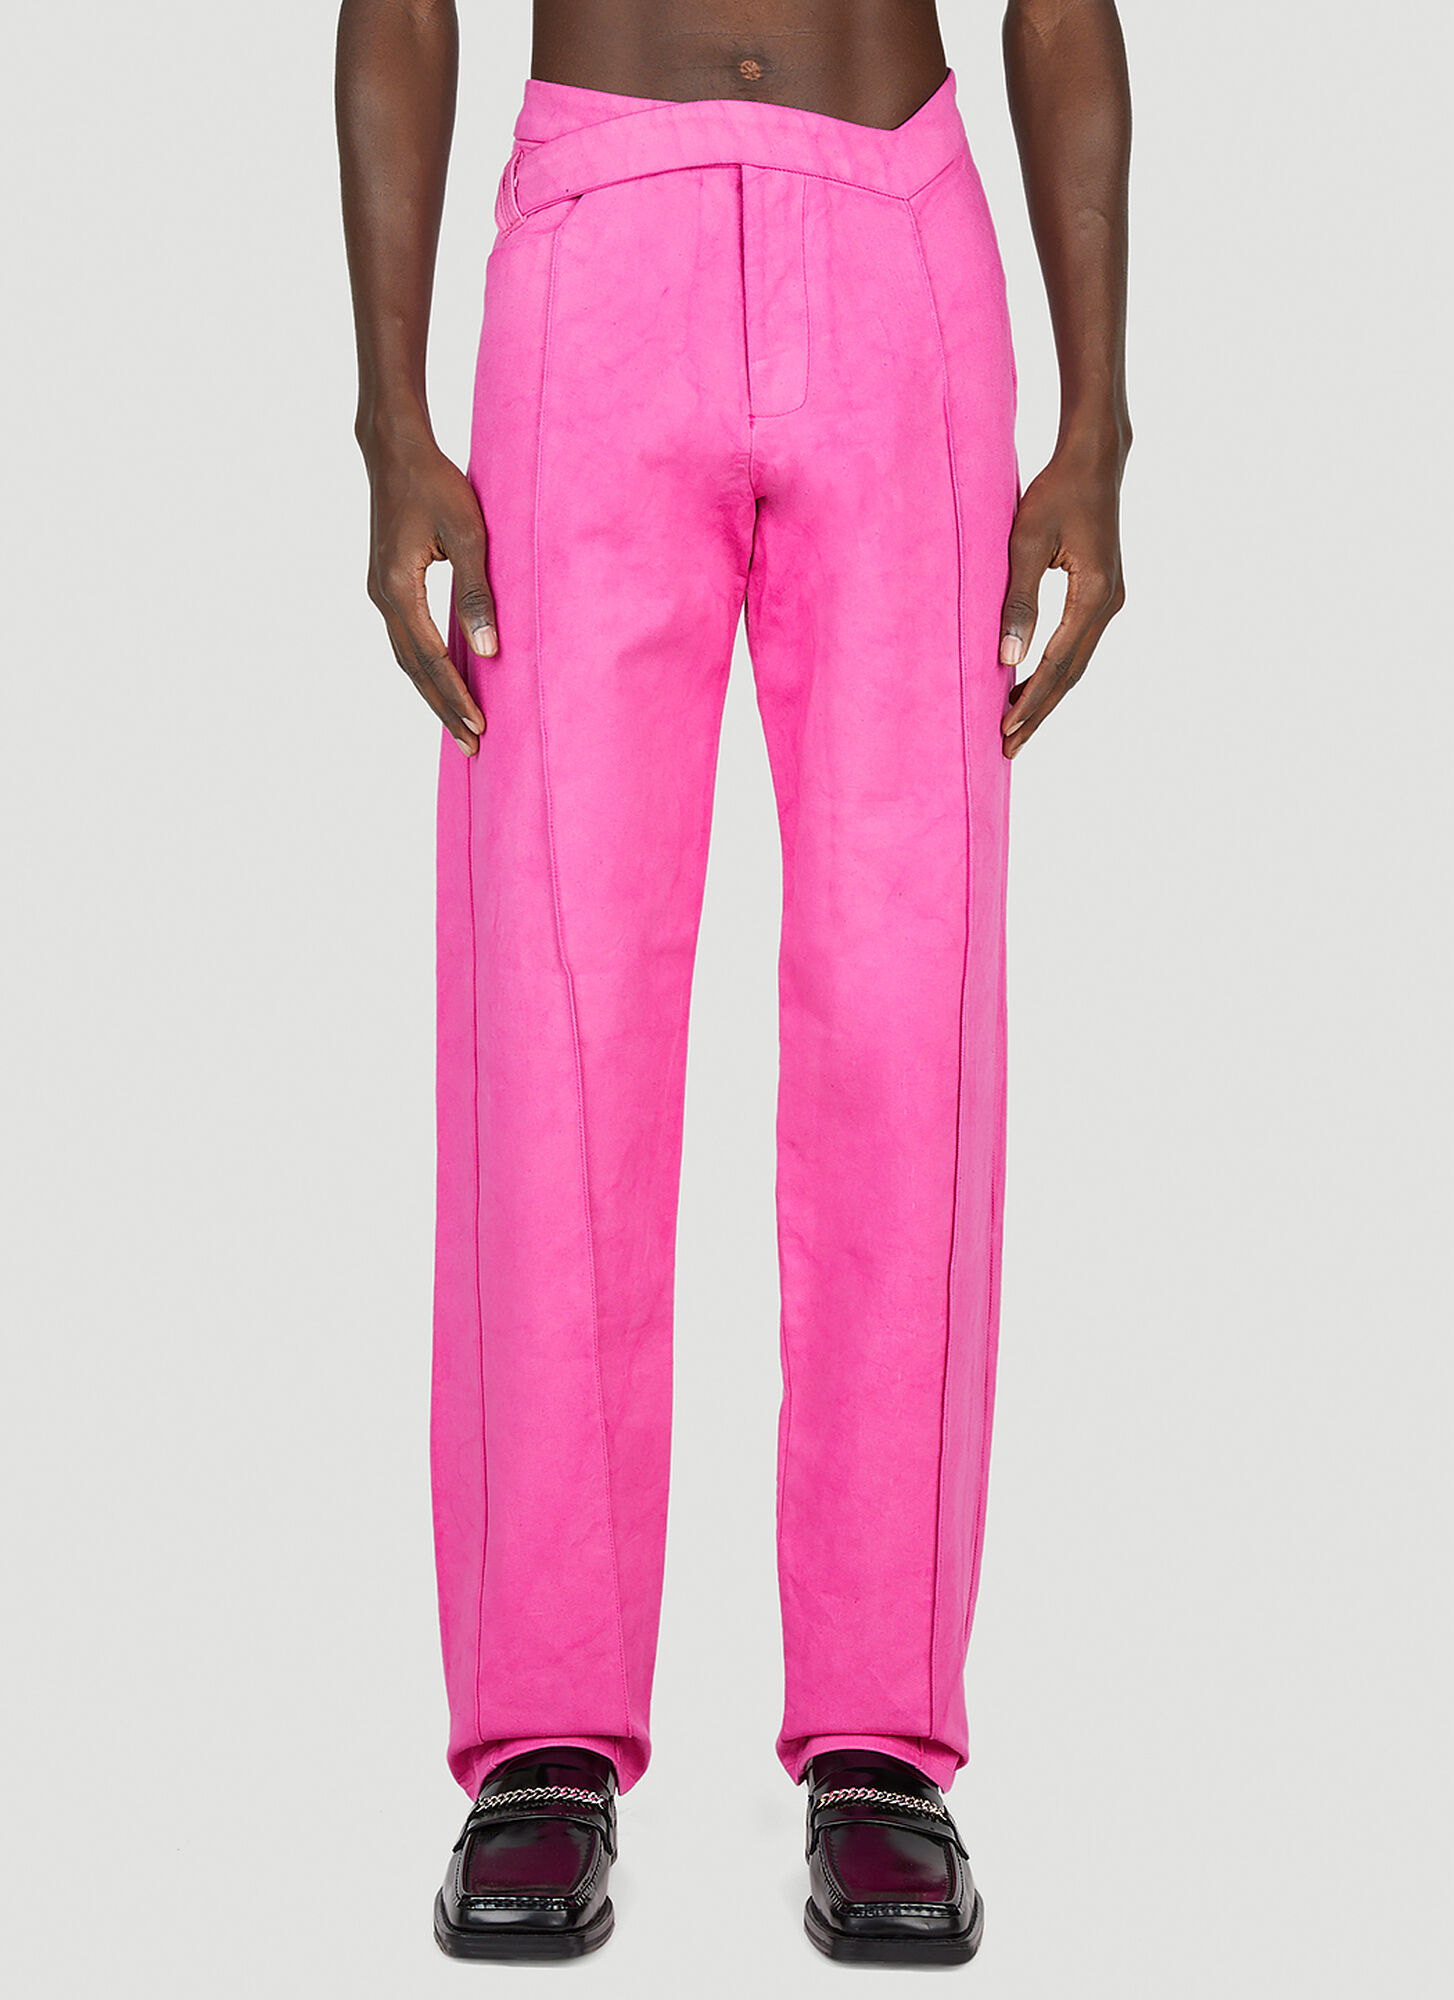 Shop Mainline:rus/fr.ca/de Asymmetric Jeans In Pink